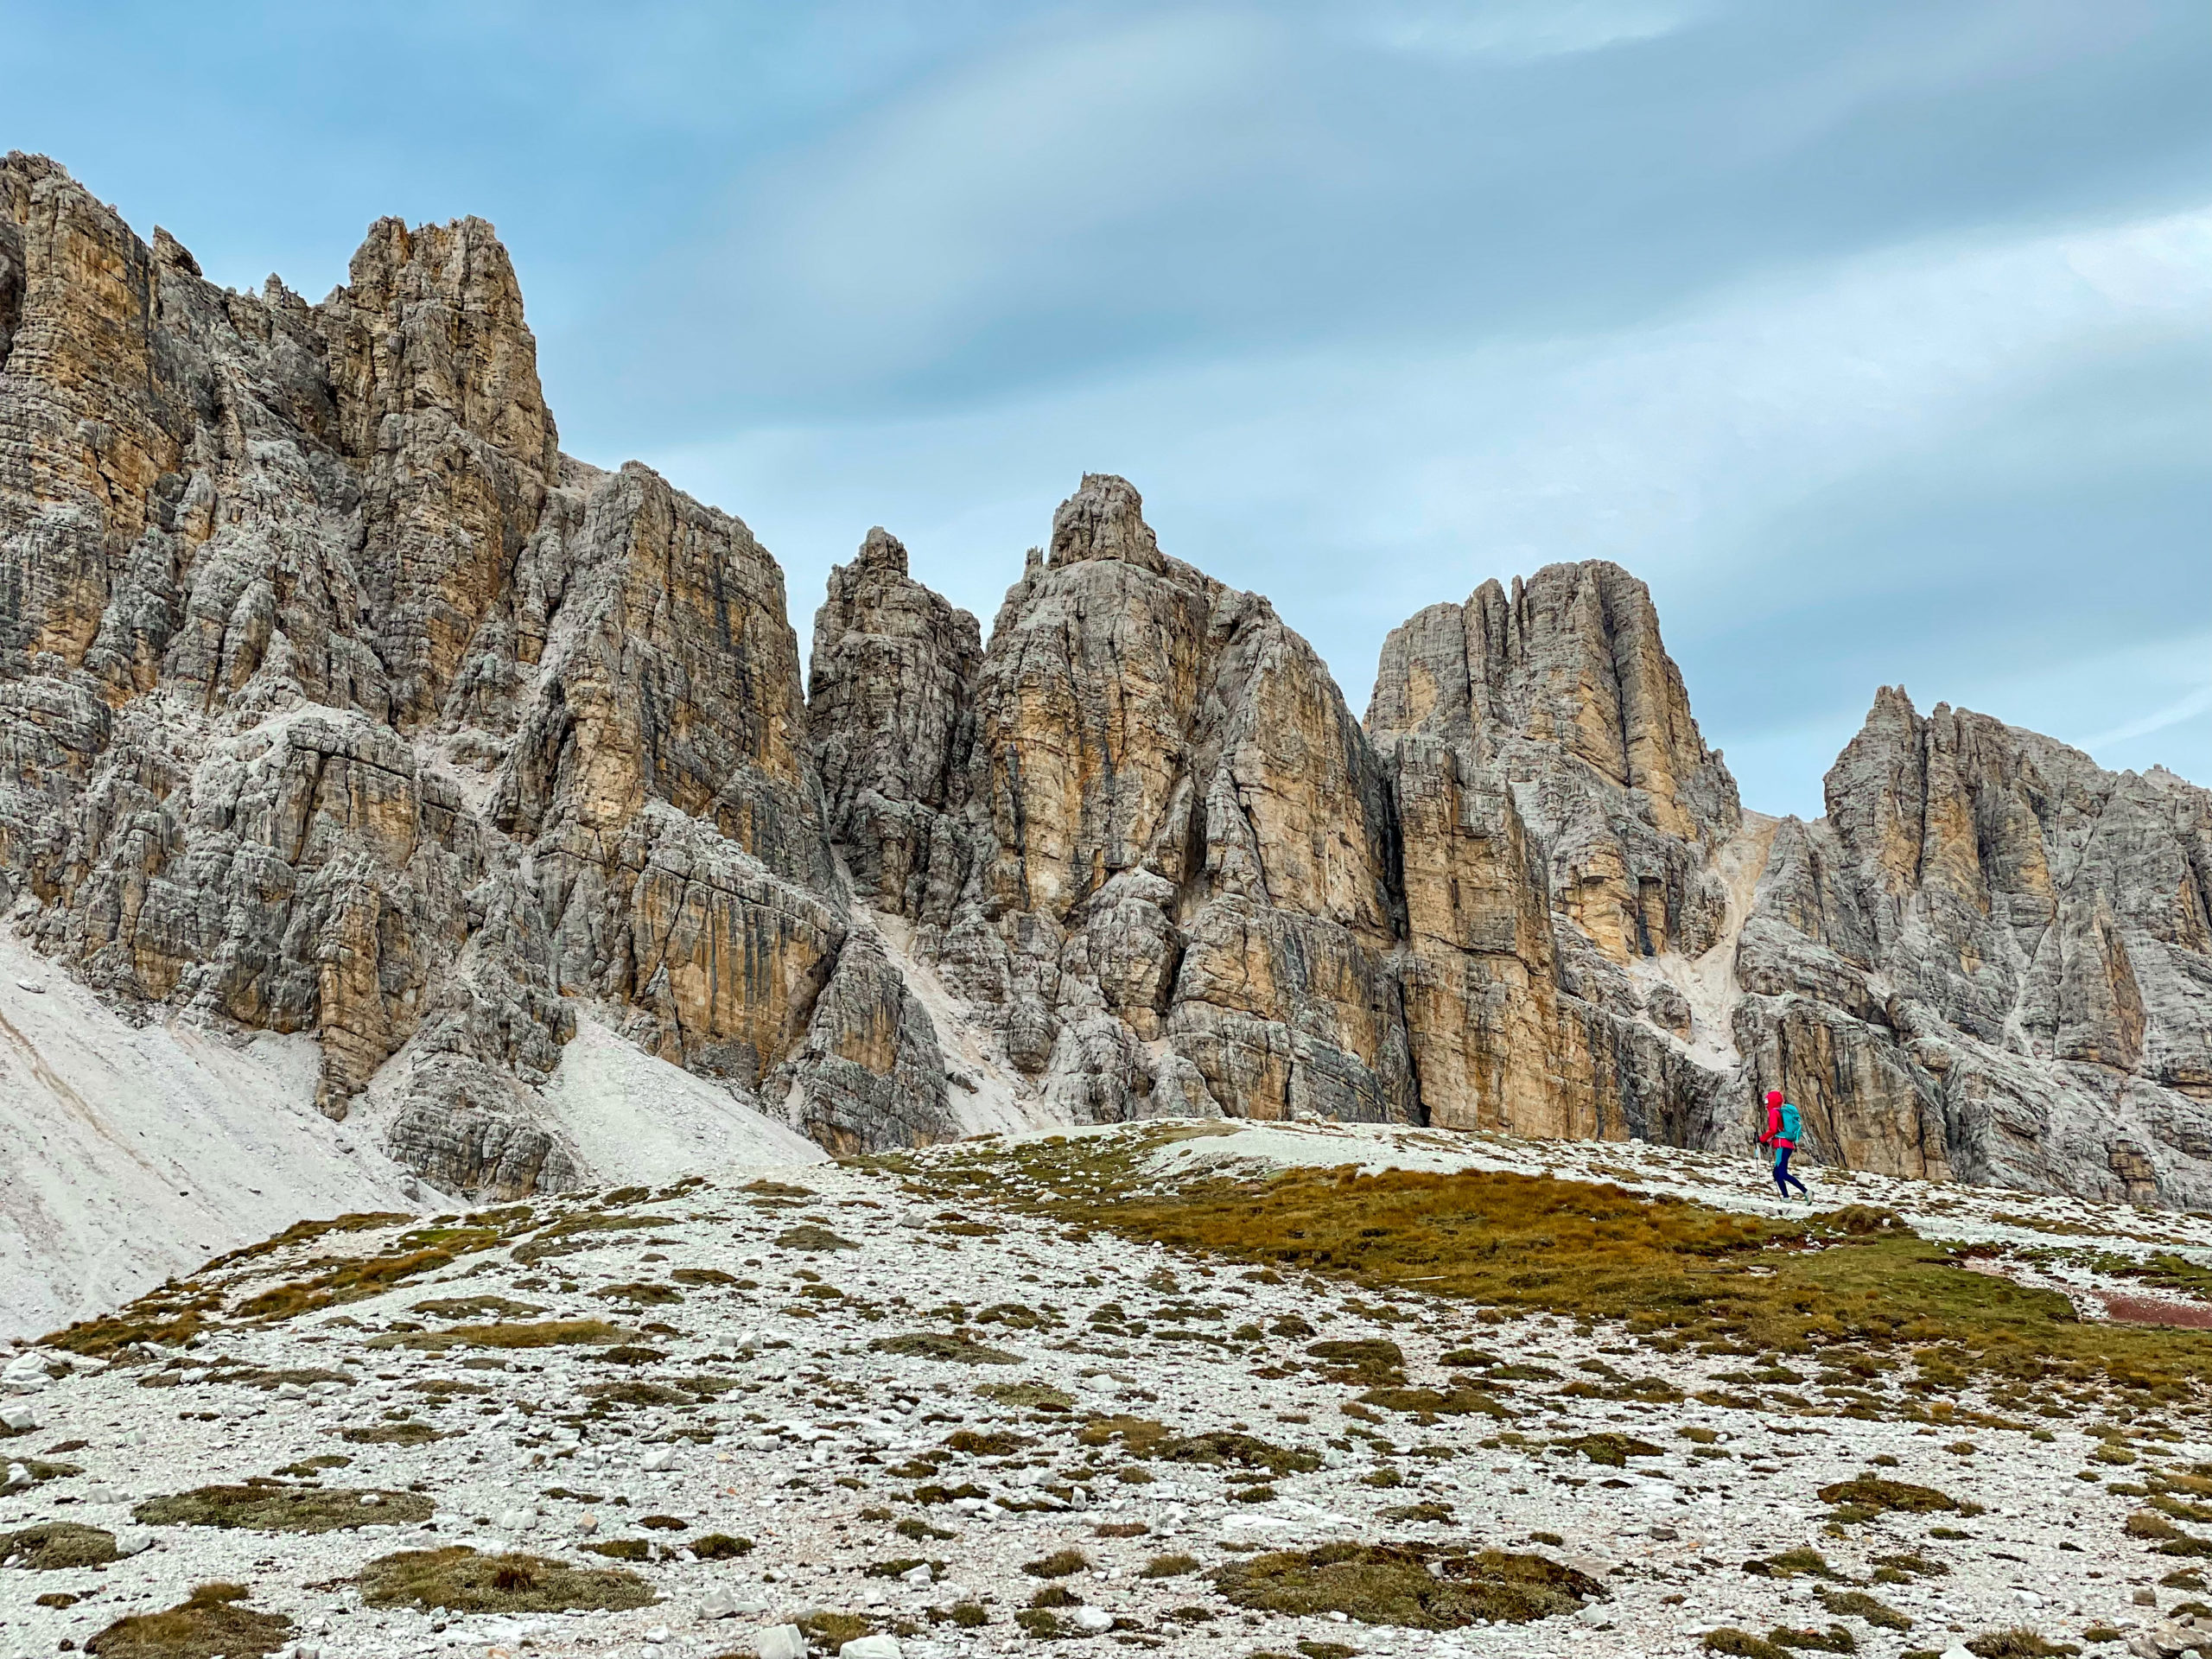 Ewa idzie po płaskim terenie, a w tle widać poszarpane szczyty Dolomitów- zejście z ferraty degli Alpini